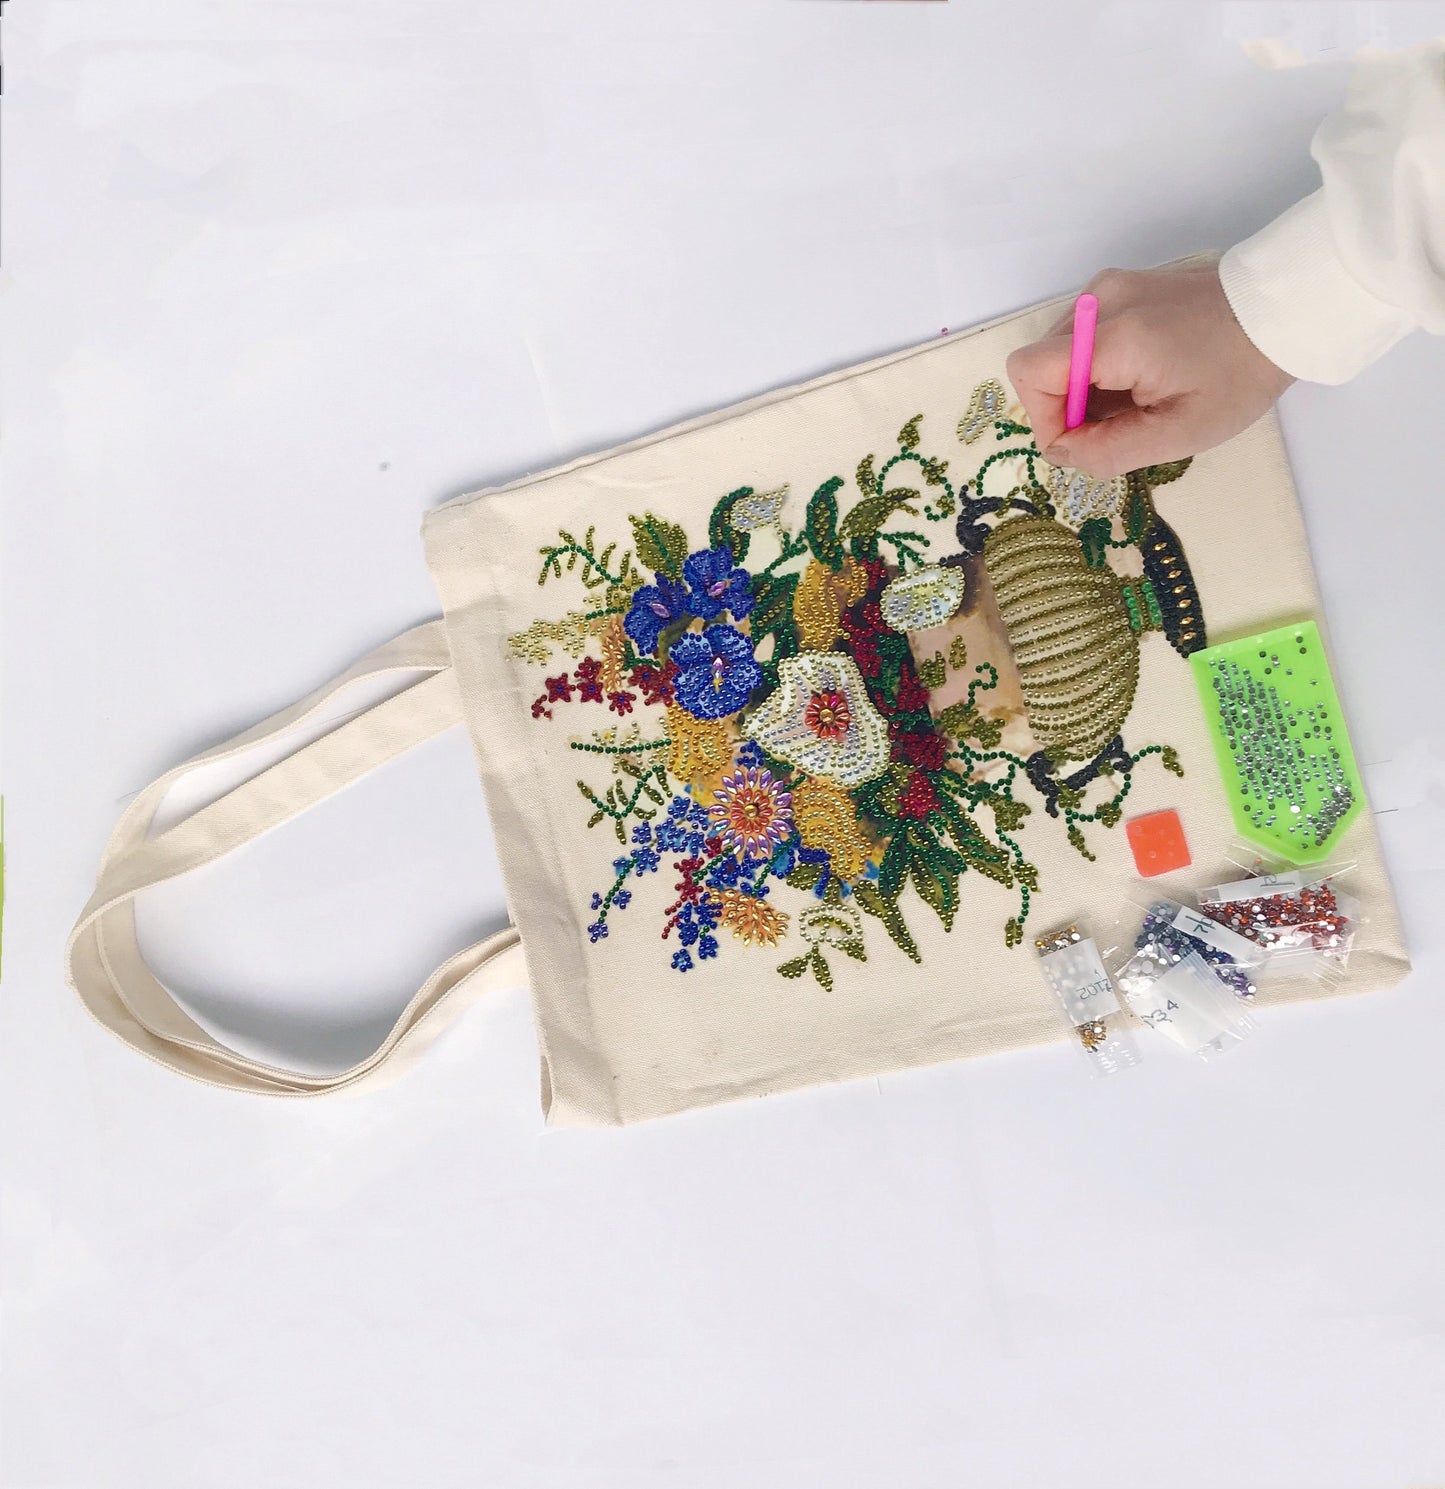 DIY Rhinestone Diamond Painting Flower Tote Bag